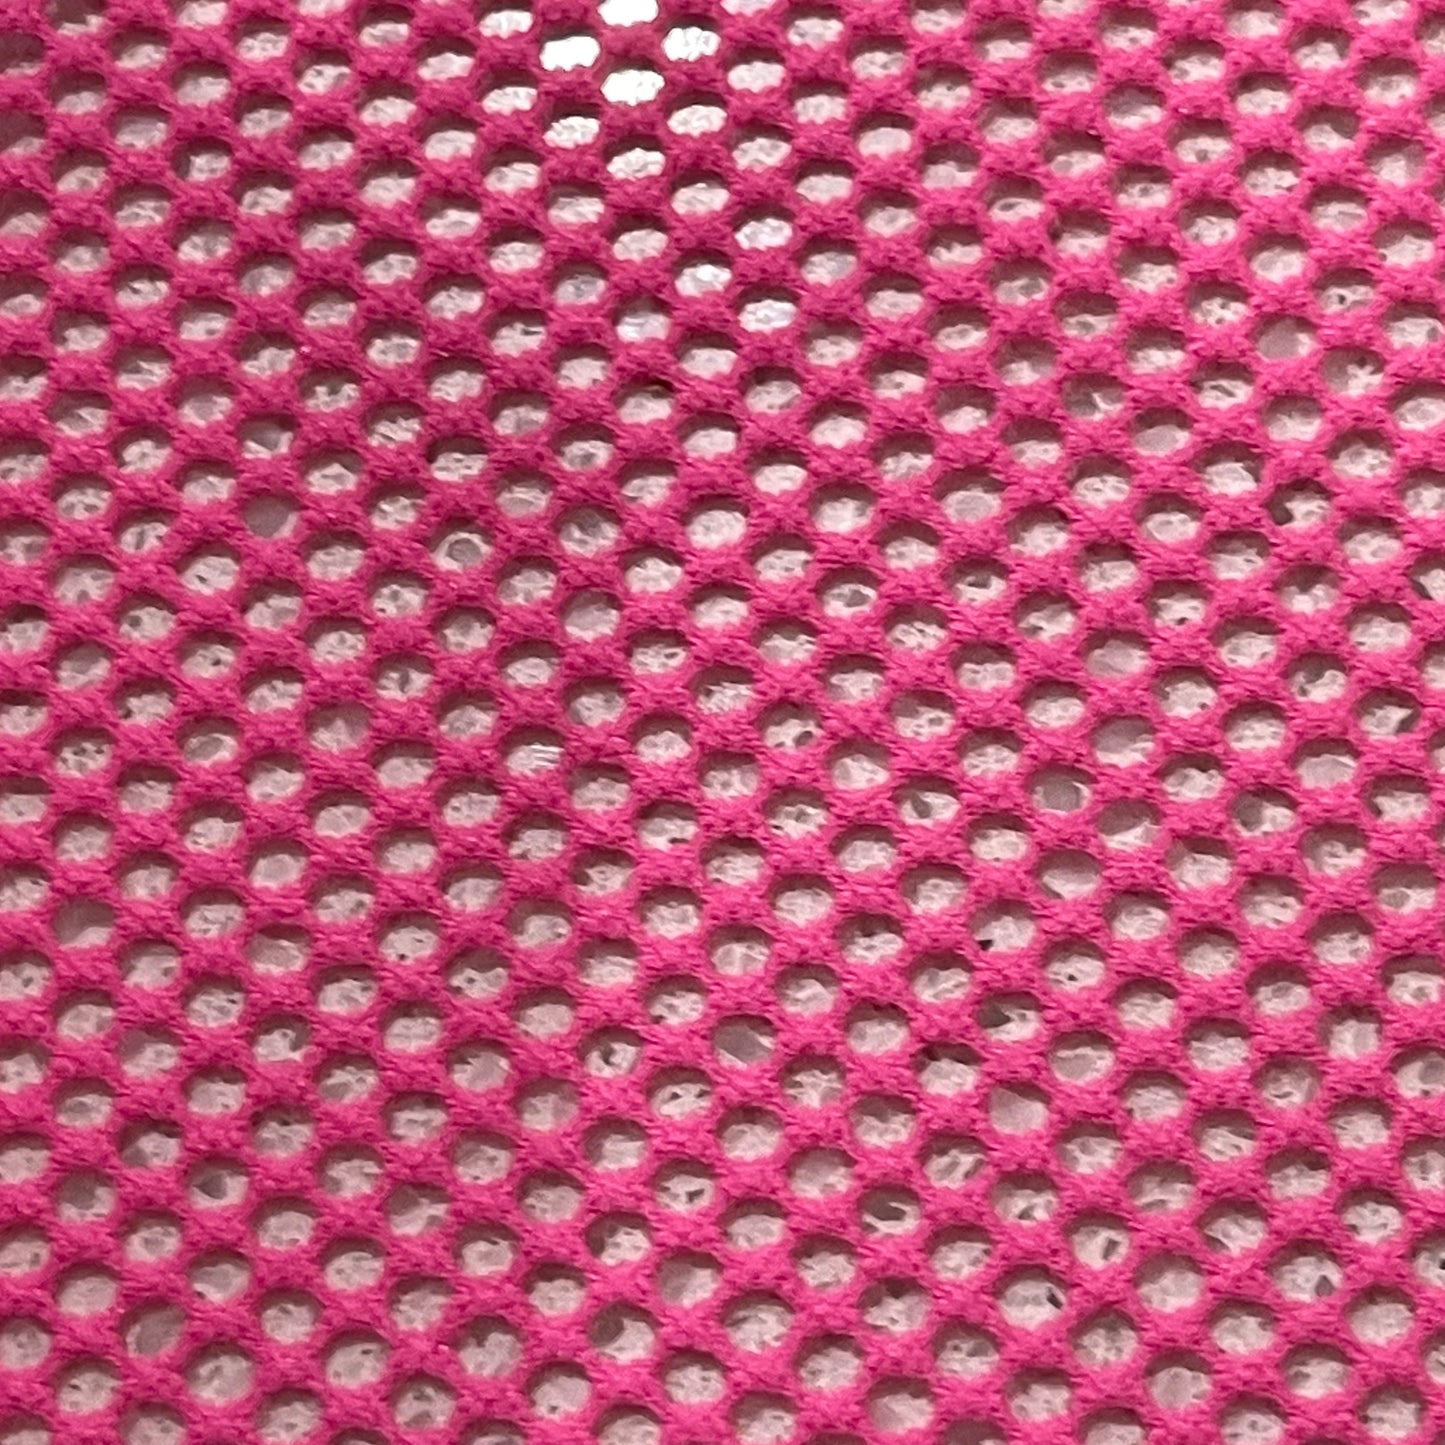 Fluro Pink - Mini Small Fishnet Spandex